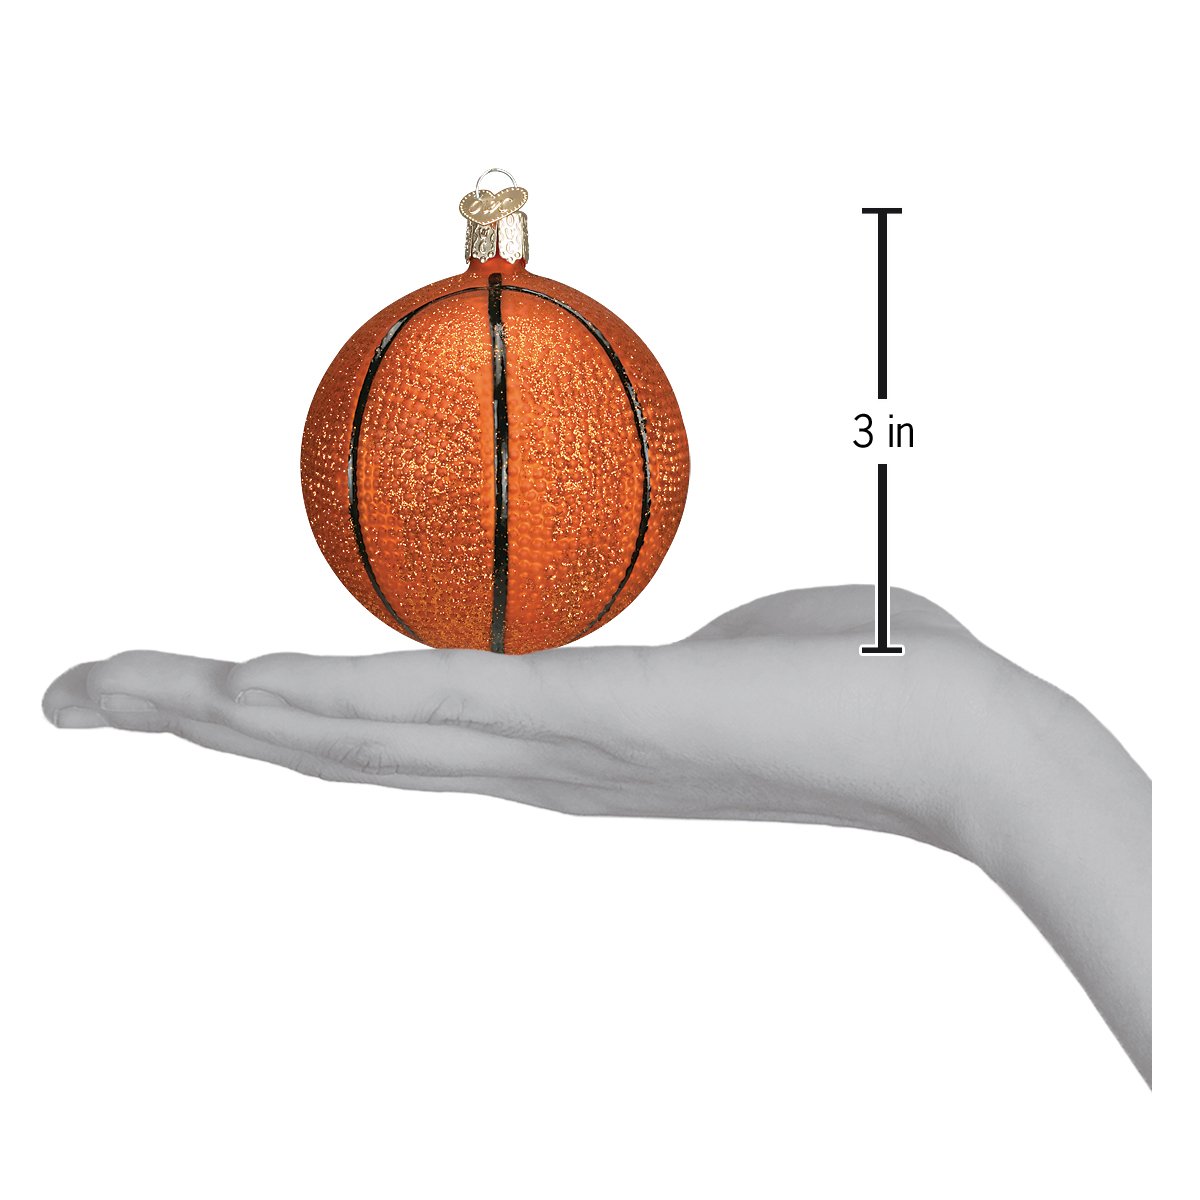 Old World Christmas - Basketball Ornament    